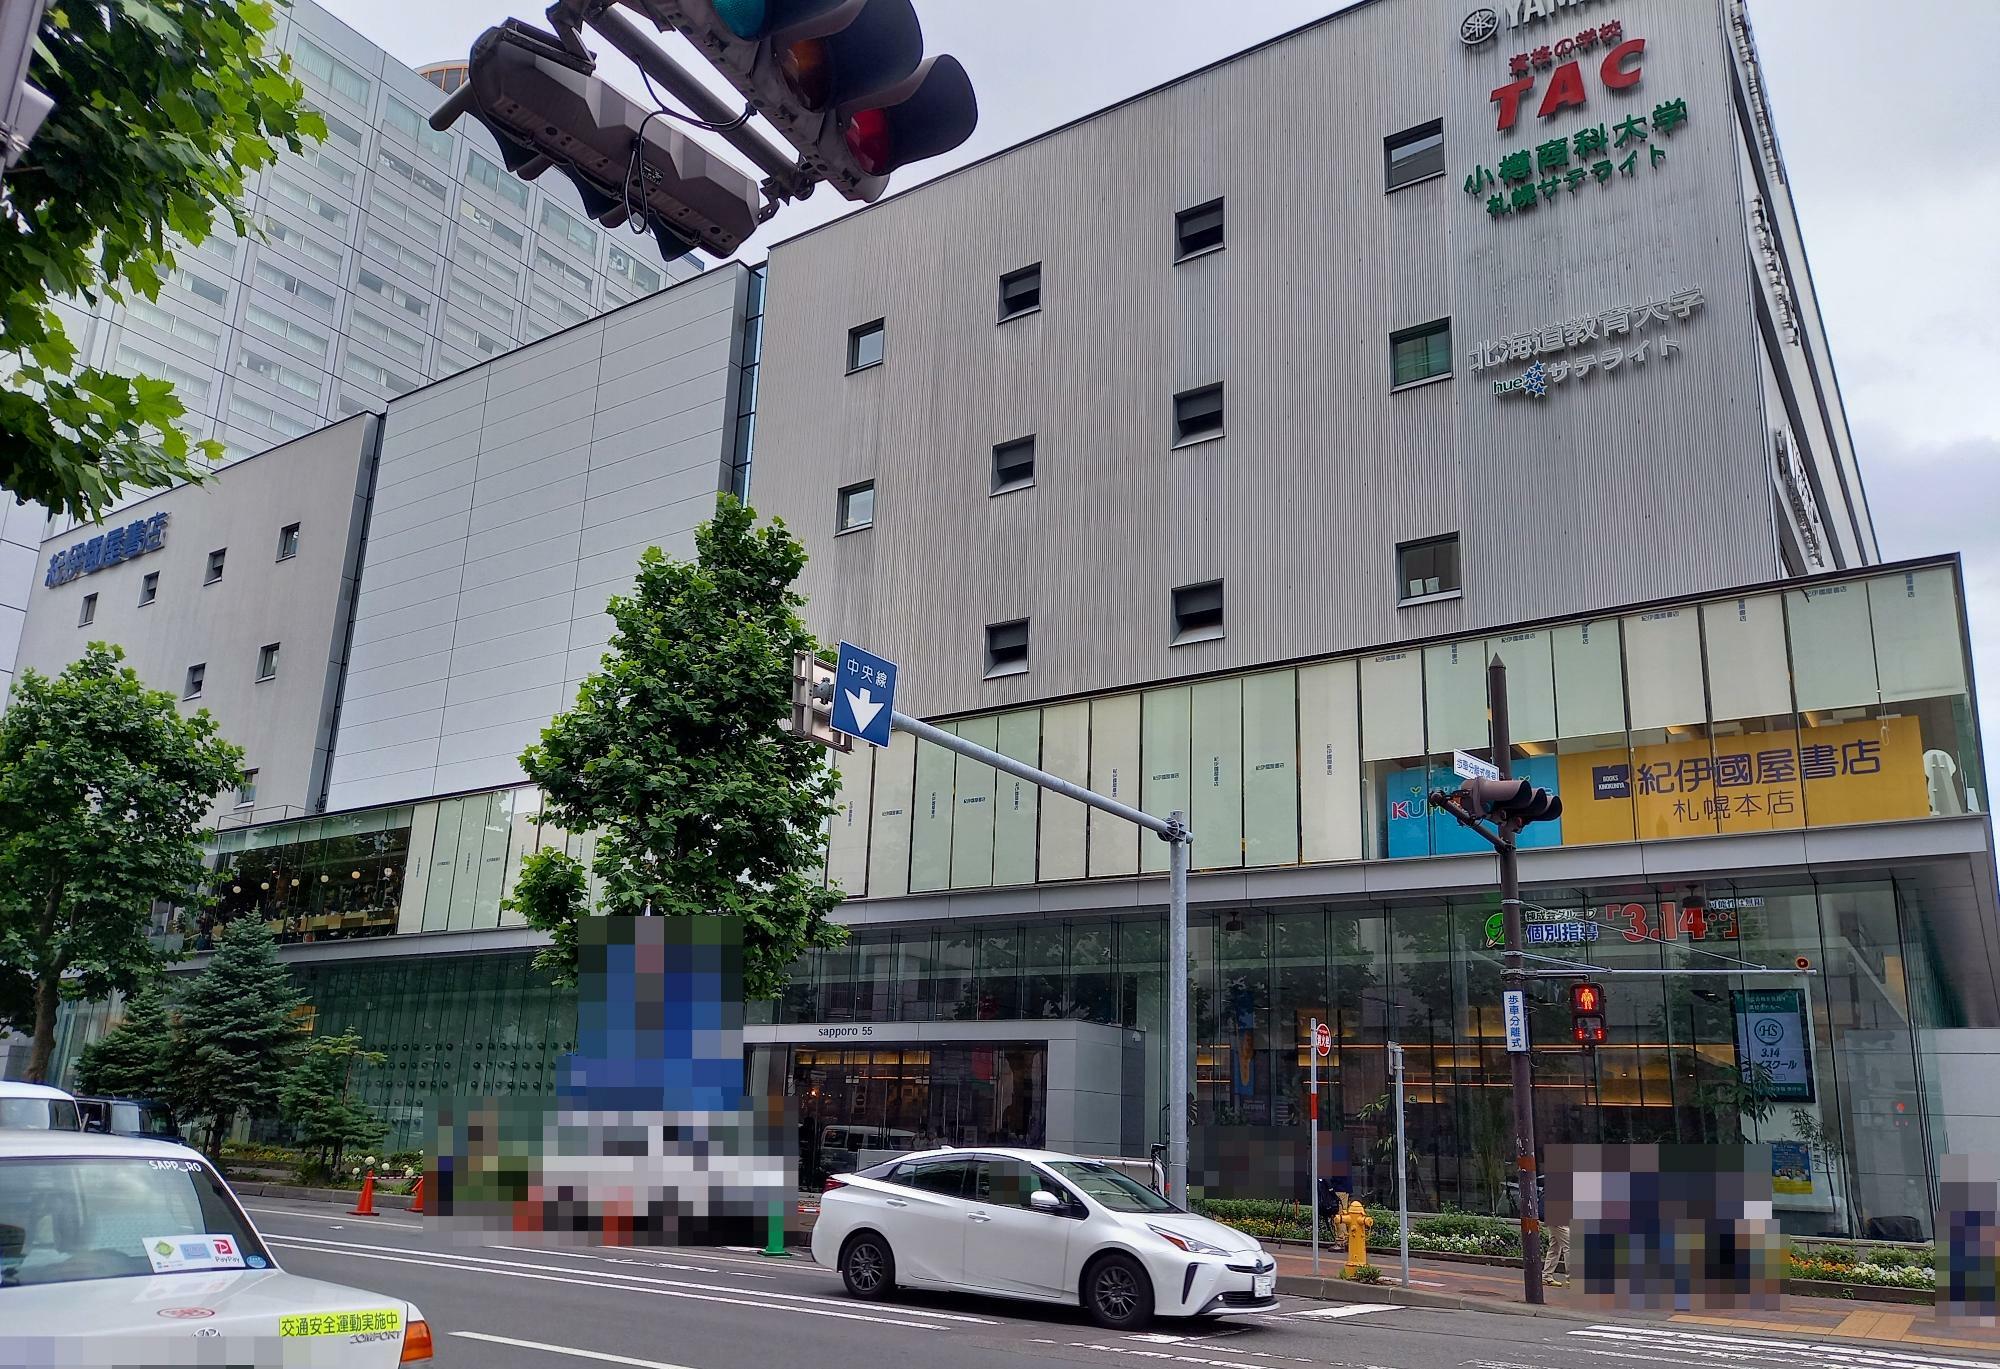 JR札幌駅から、大丸を通り抜けて紀伊国屋書店 札幌本店に向かう道は、多くの方が利用しているルートかと思います。